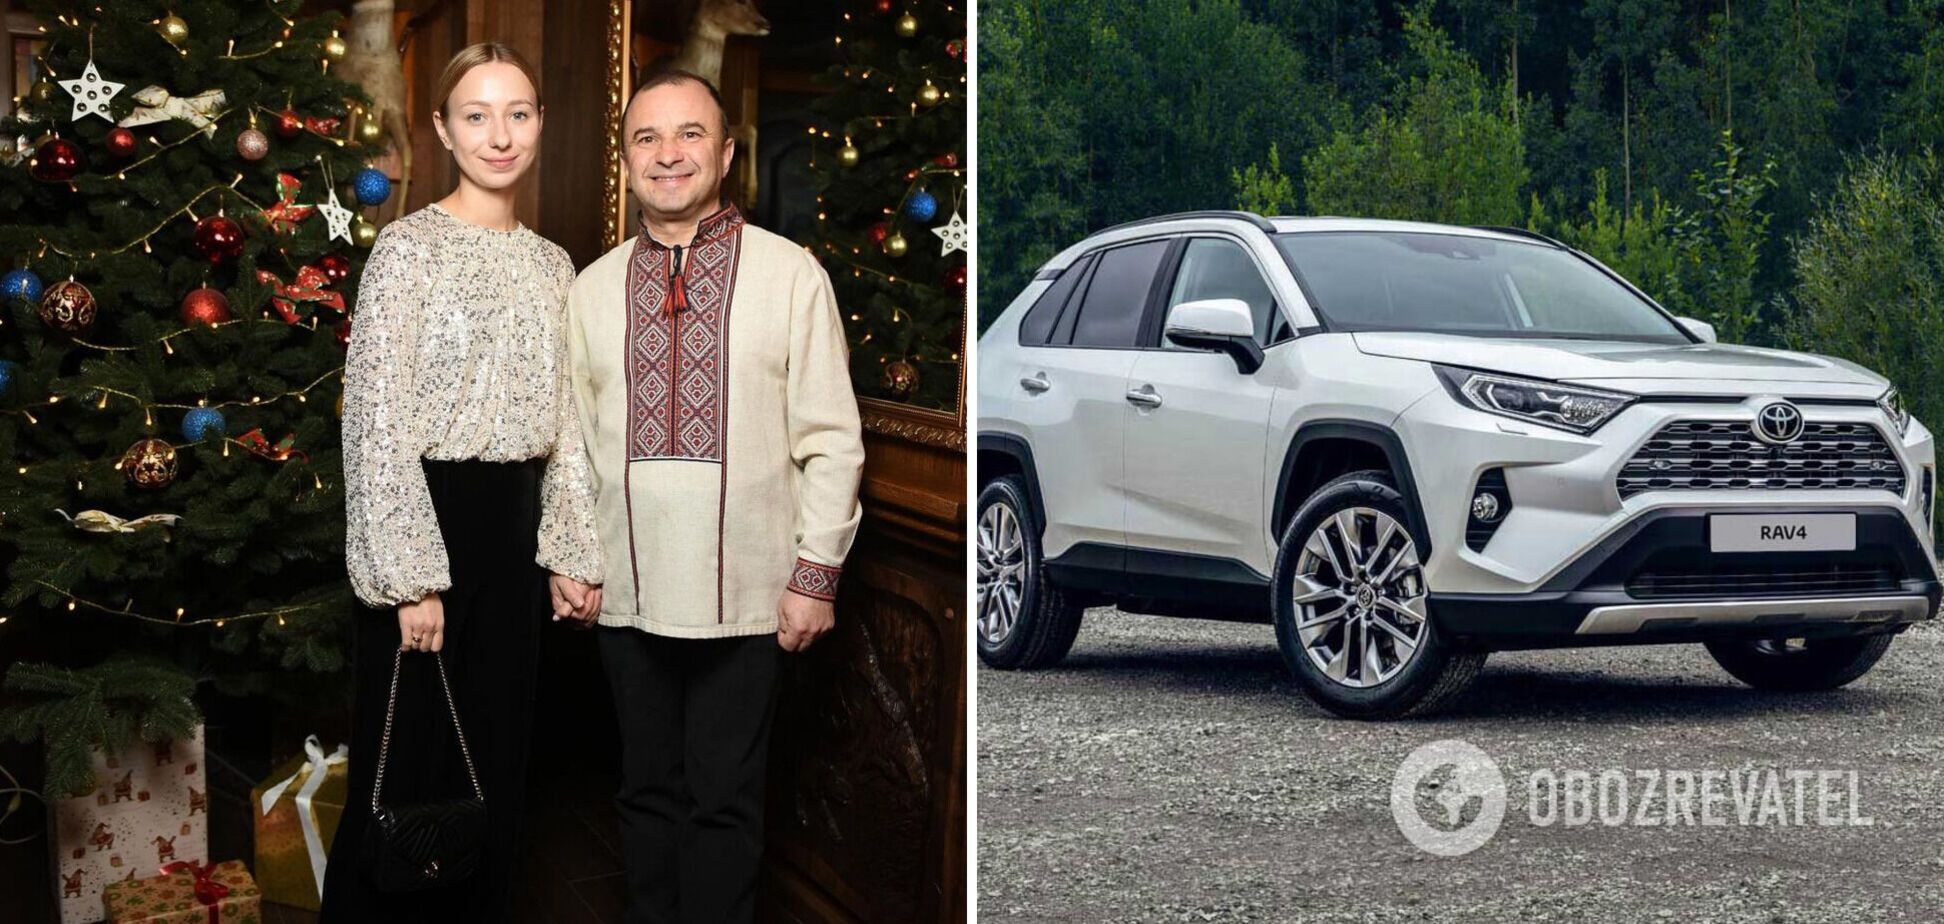 Виктор Павлик с женой купили авто за 700 тысяч гривен